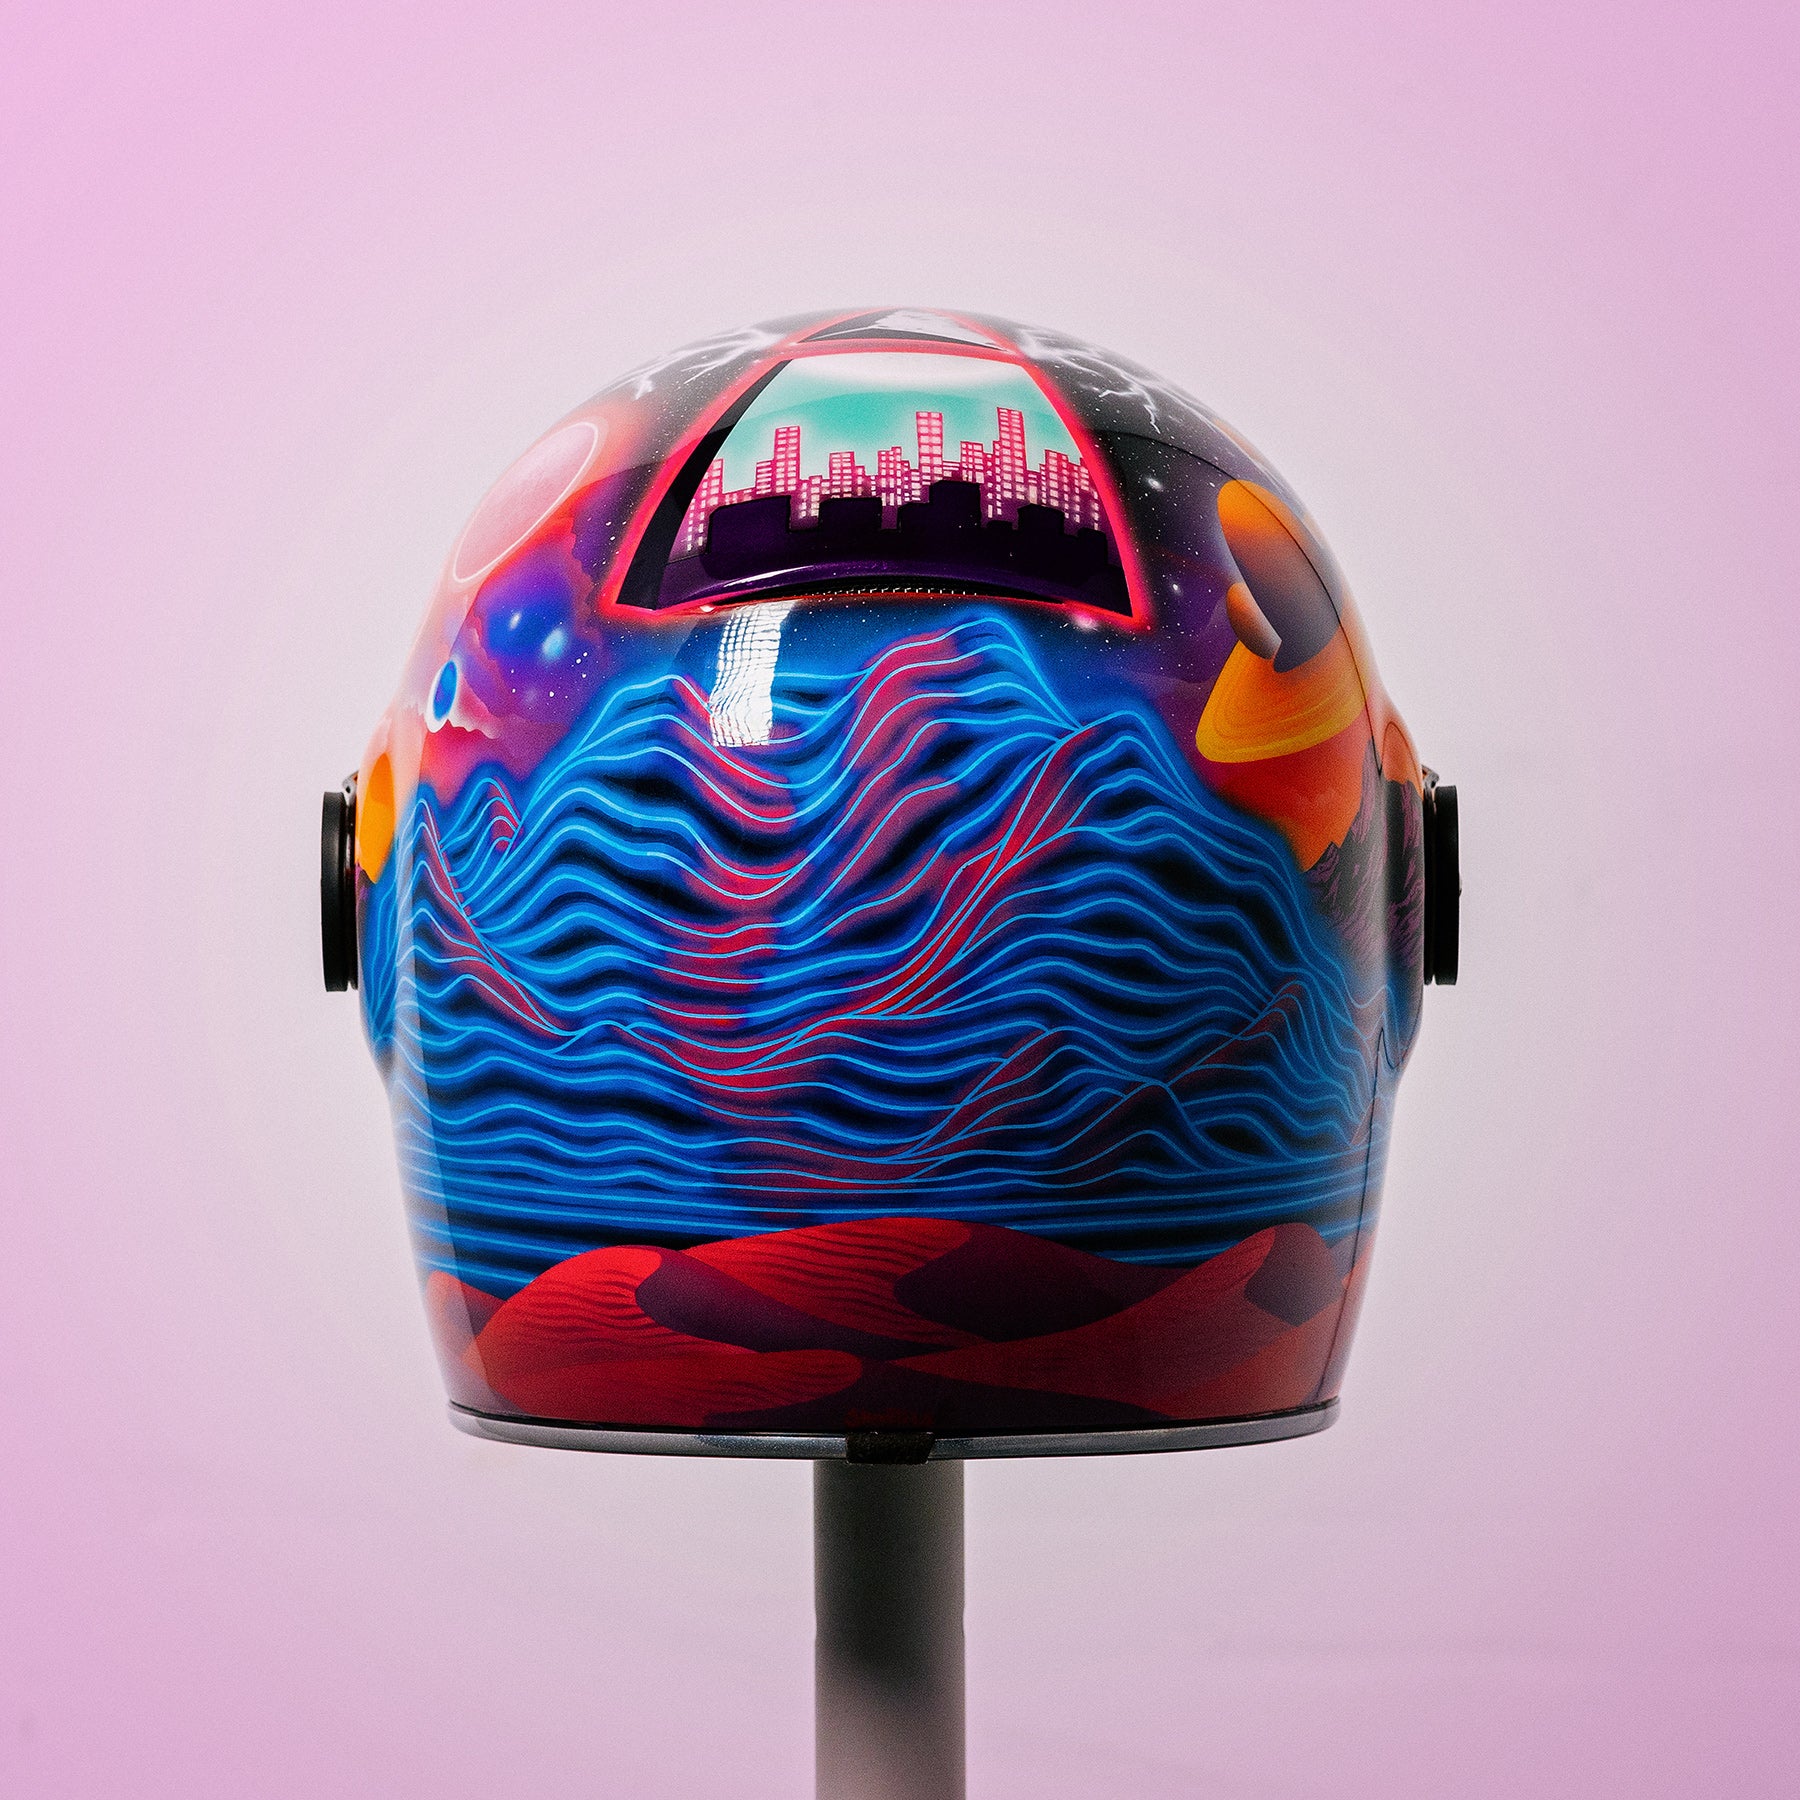 Trippy Ten helmet art show Pittsburgh Glory Daze motorcycle show Bell Helmets Jasmin Skulltits